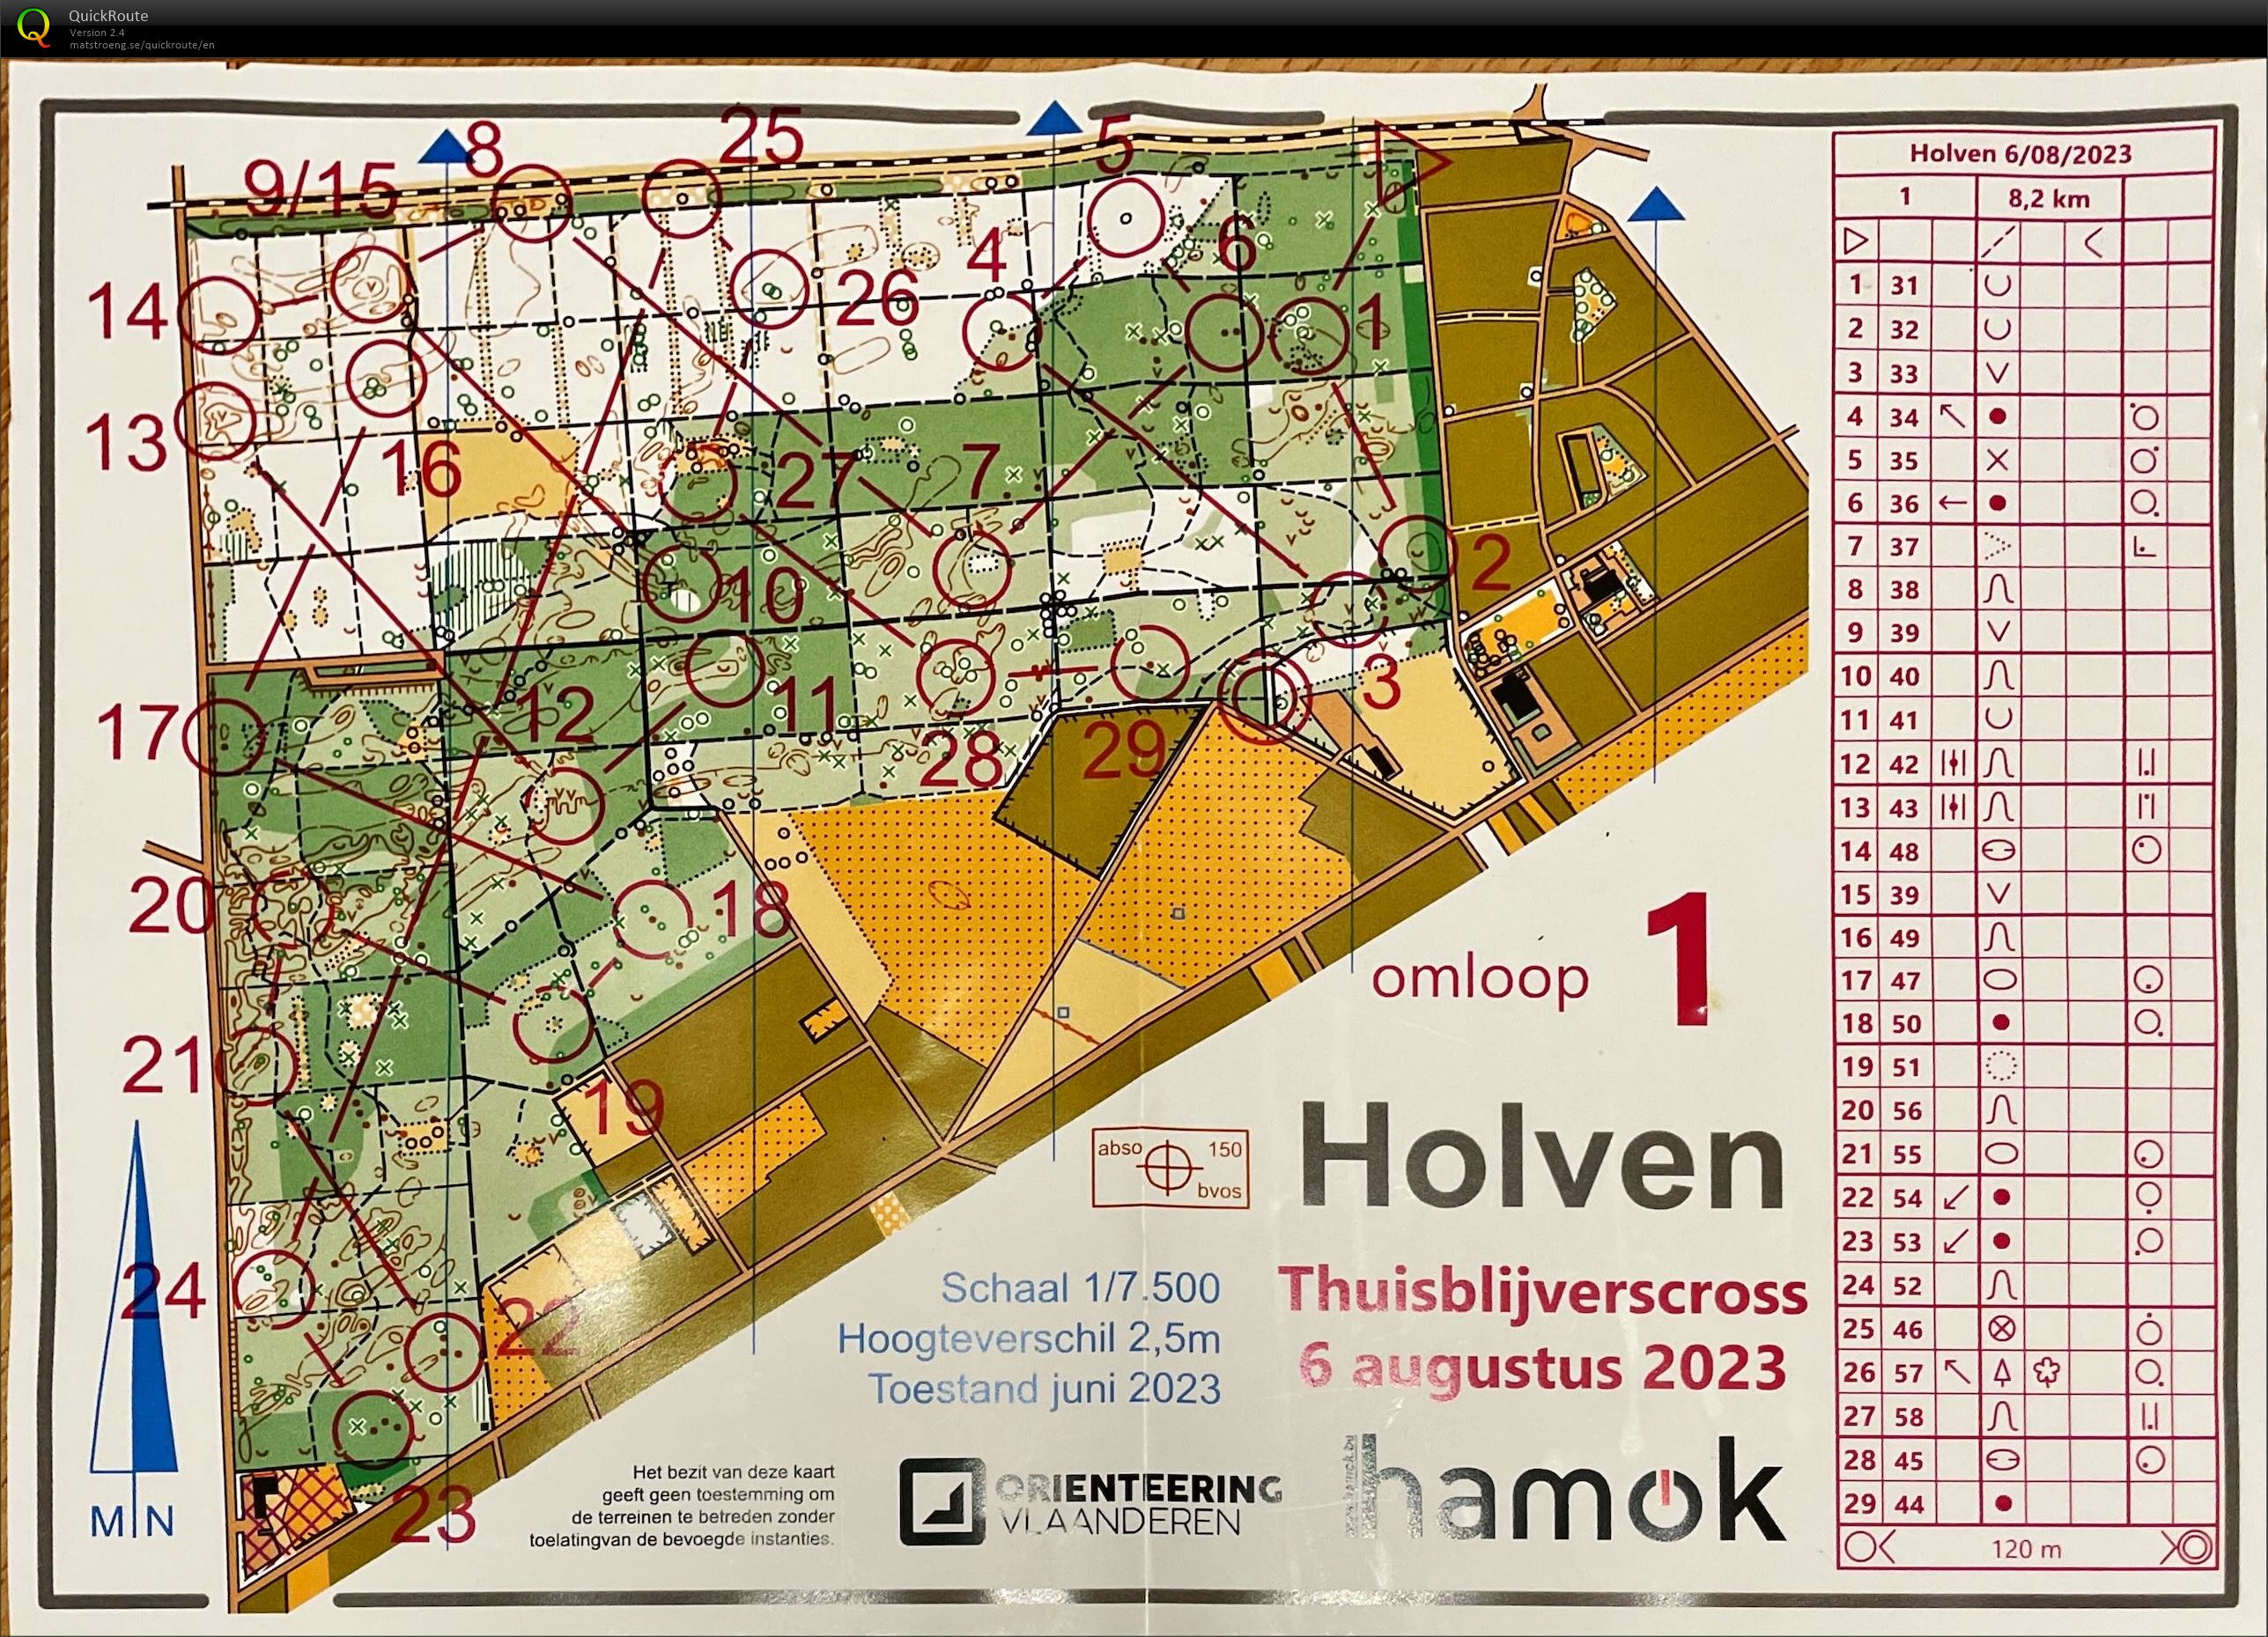 Thuisblijverscross Holven (06/08/2023)